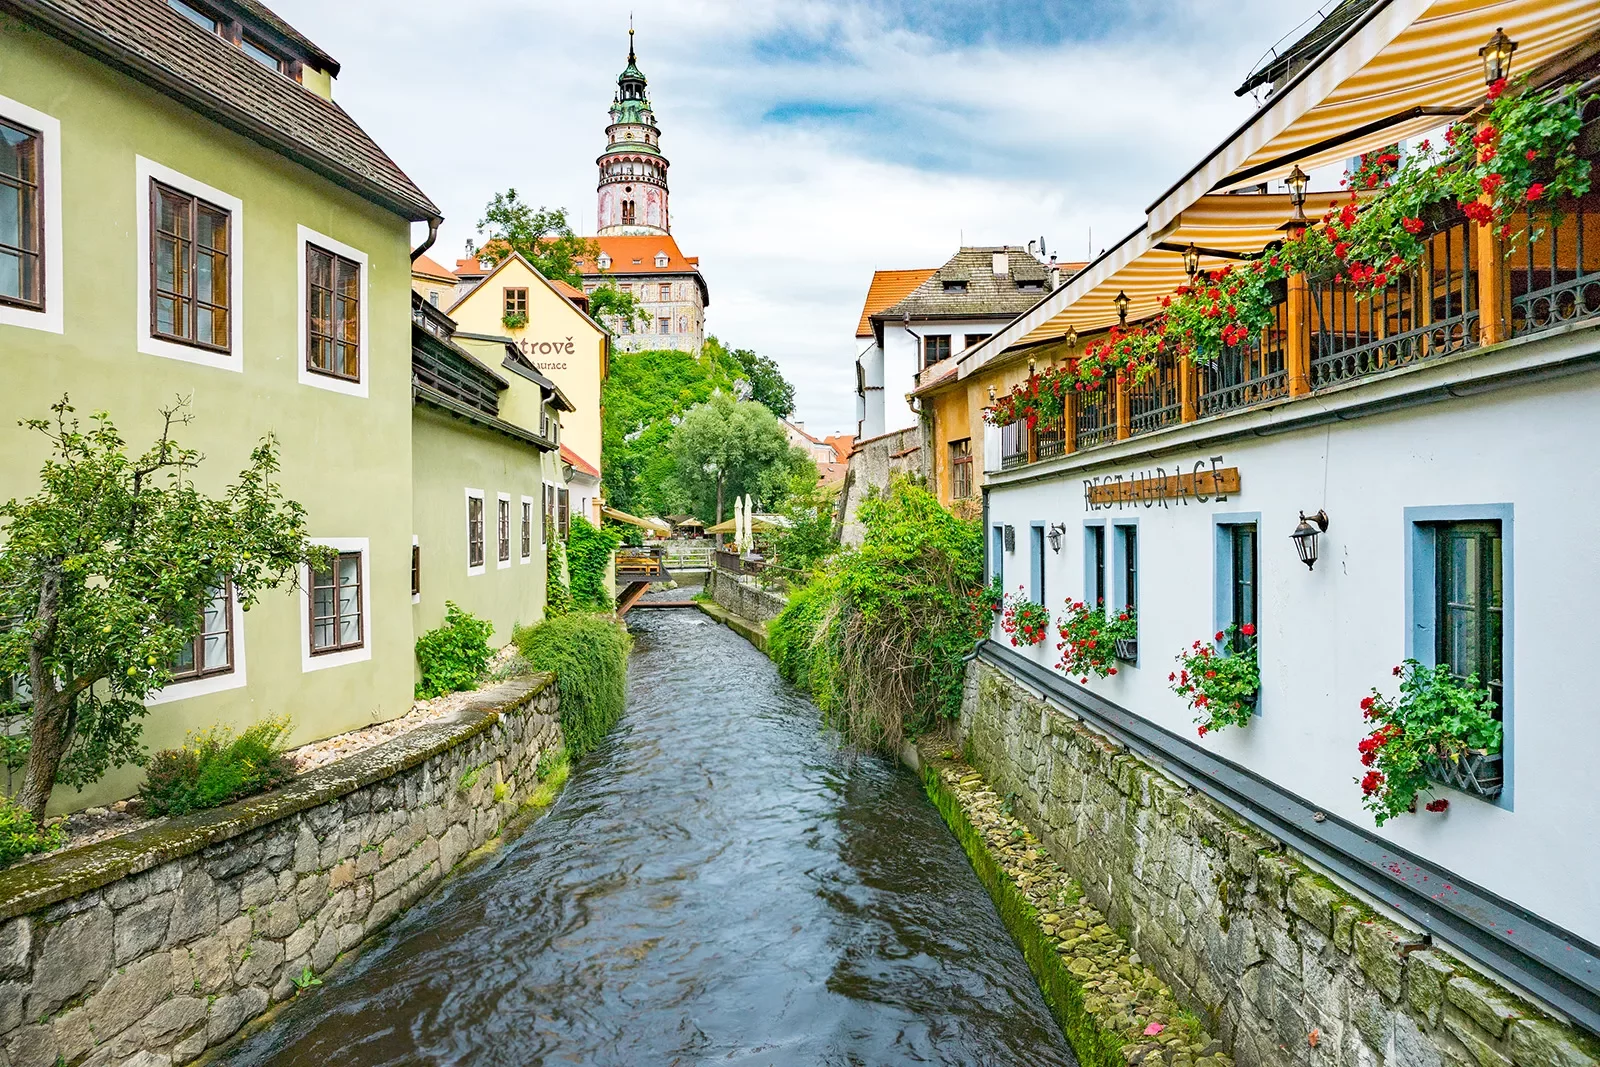 Restaurants along a waterway in Czech Republic.